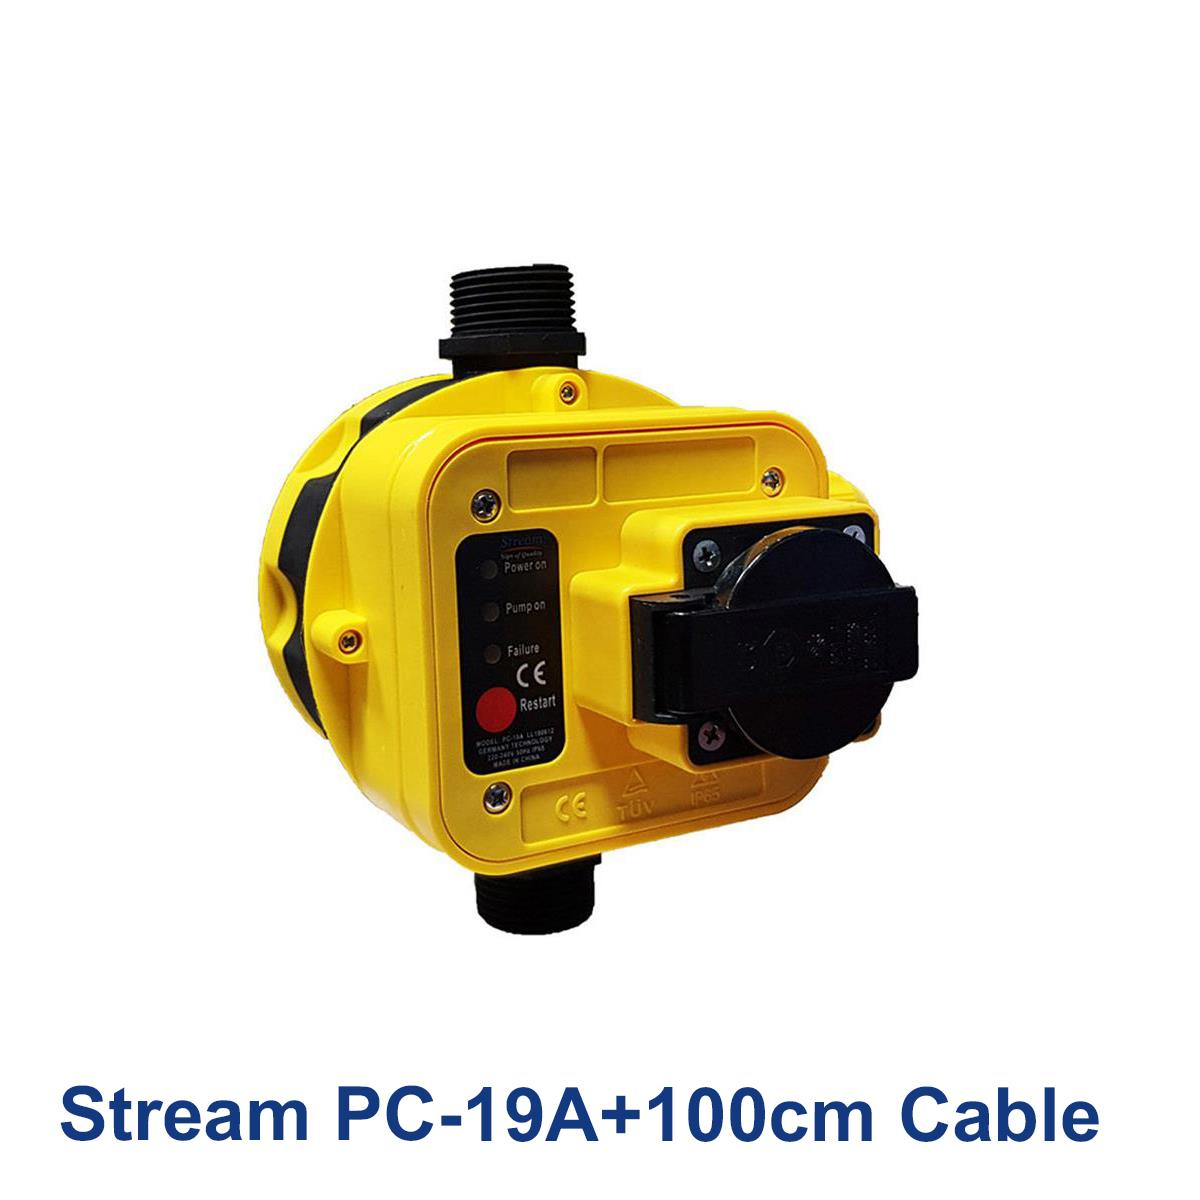 Stream-PC-19A+100cm-Cable